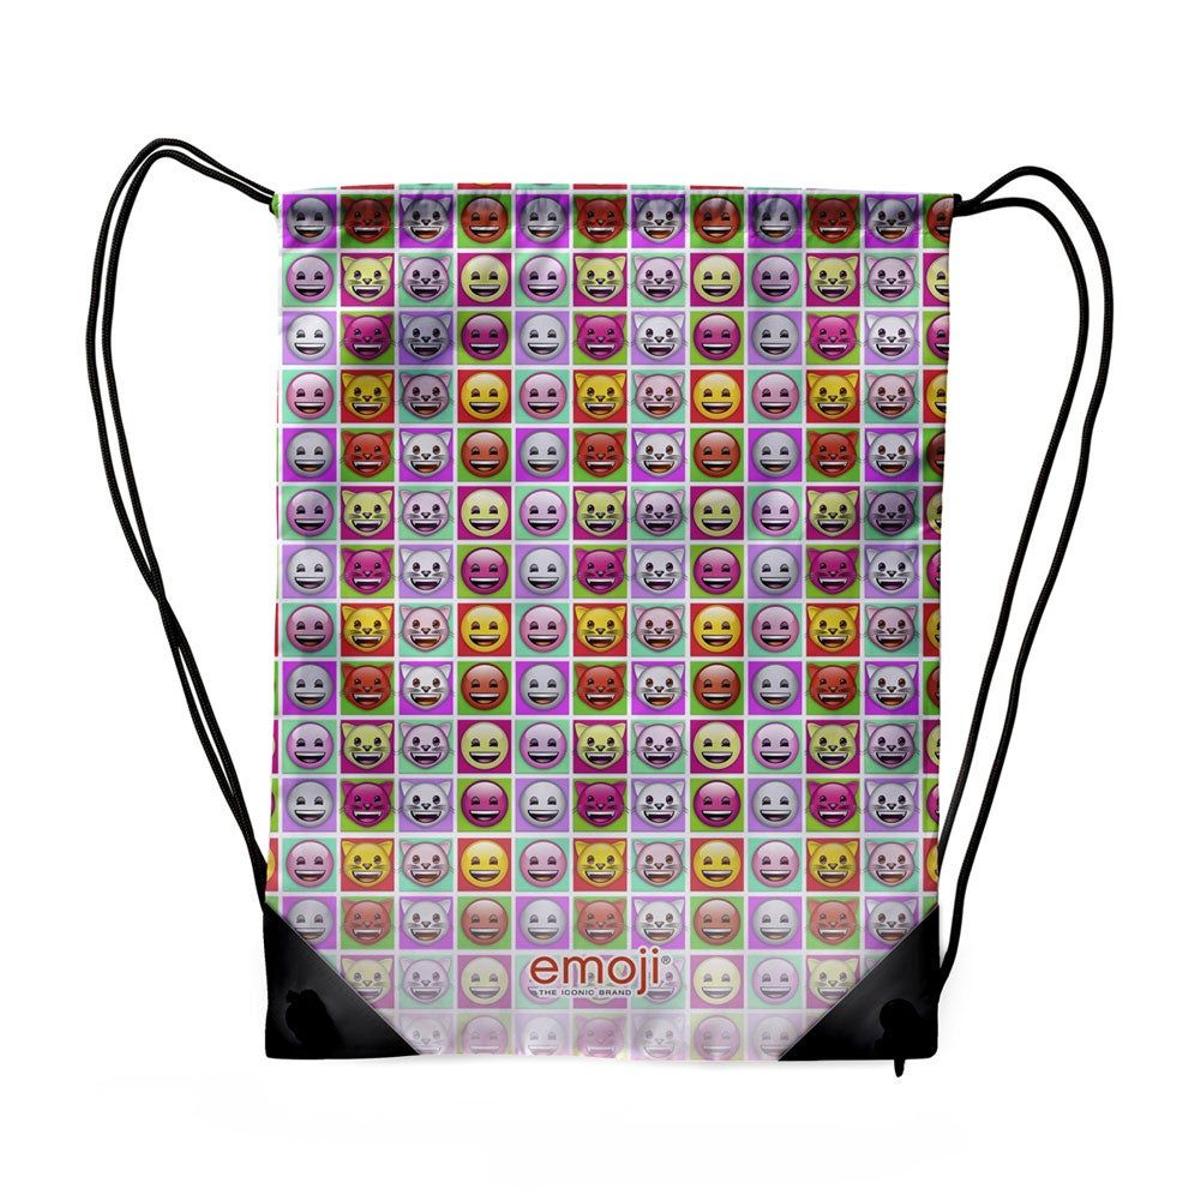 Gym sac, de emoji (precio: 12,90 euros)